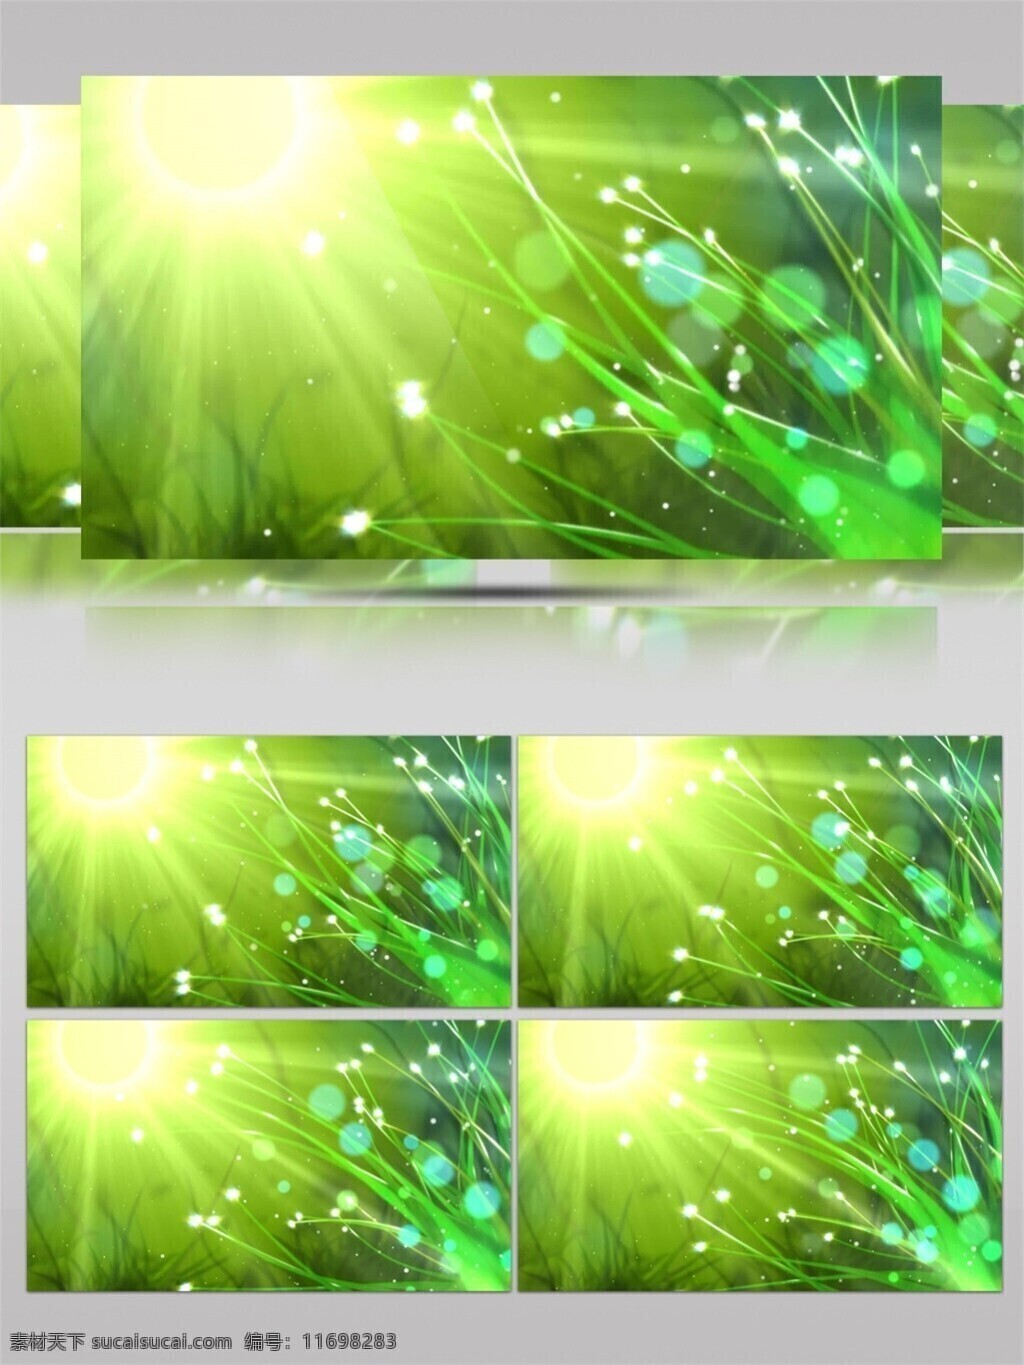 阳光 绿叶 视频 绿色 植物 枝叶 视觉享受 唯美背景素材 节目灯光